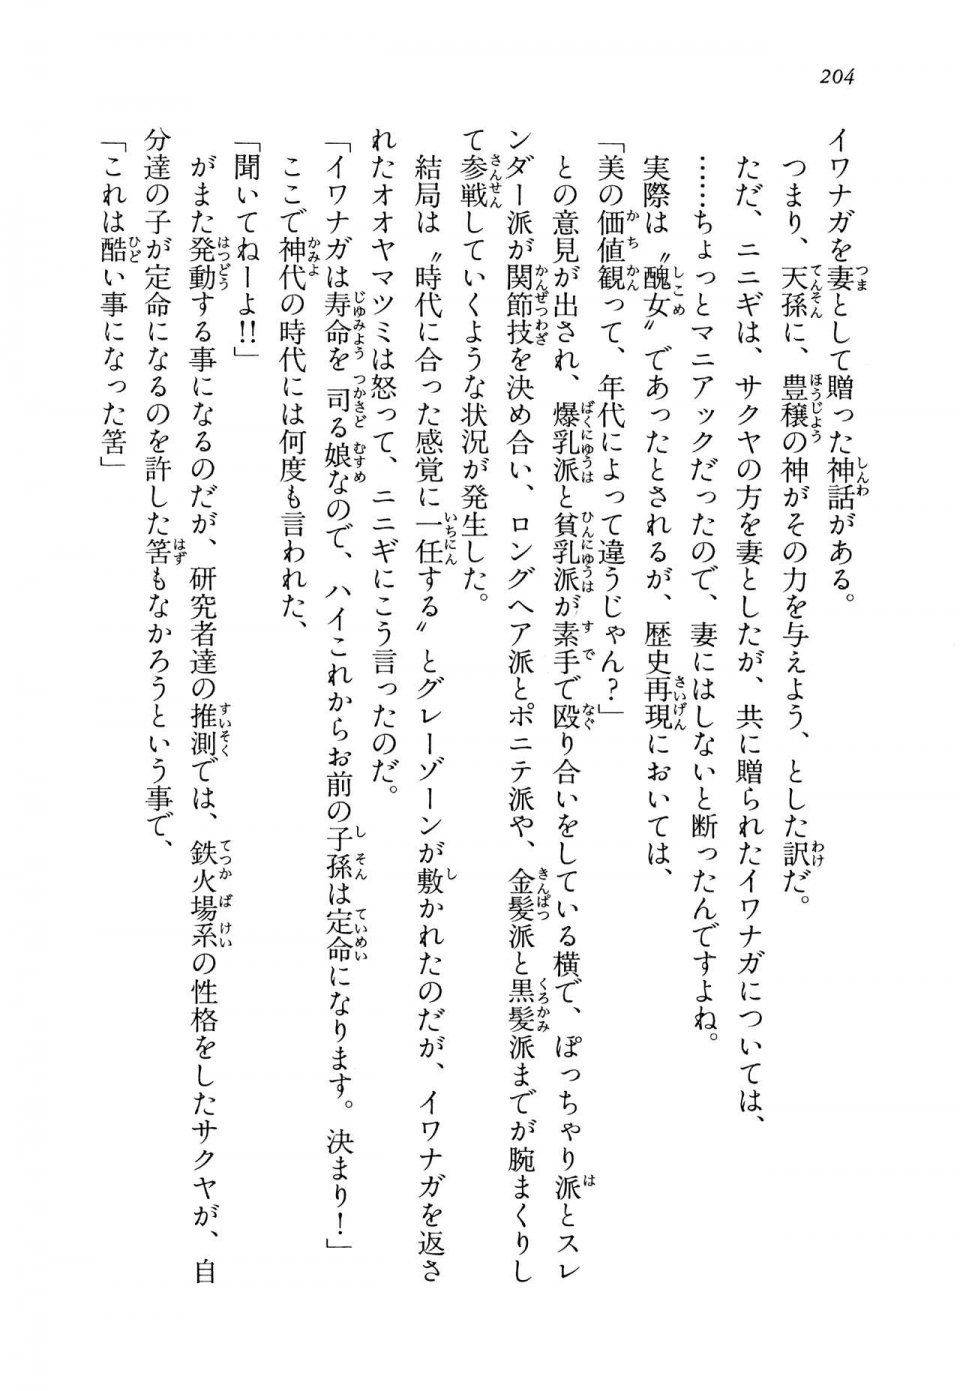 Kyoukai Senjou no Horizon LN Vol 14(6B) - Photo #204